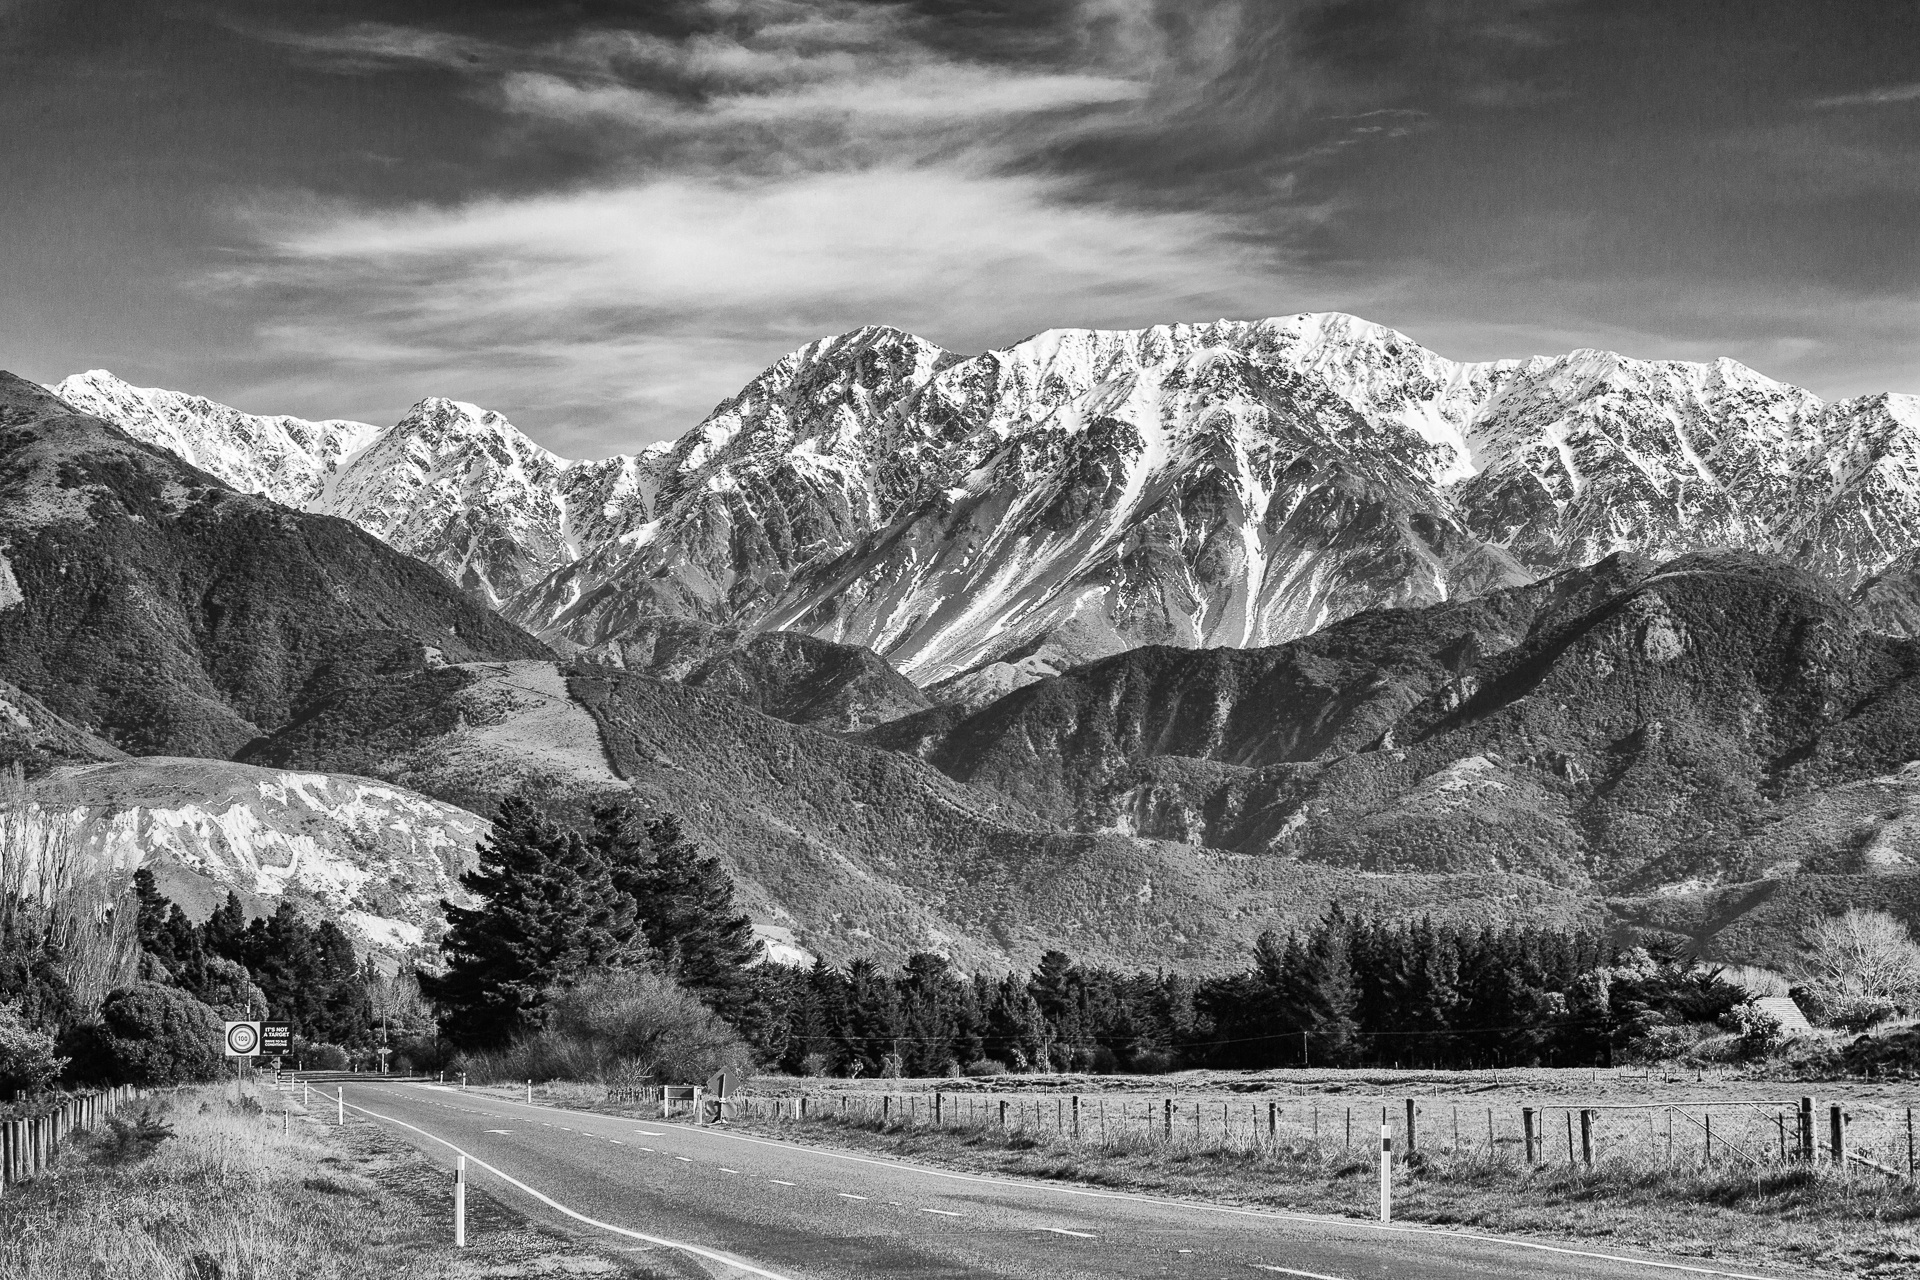 Stunning mountain scene in New Zealand